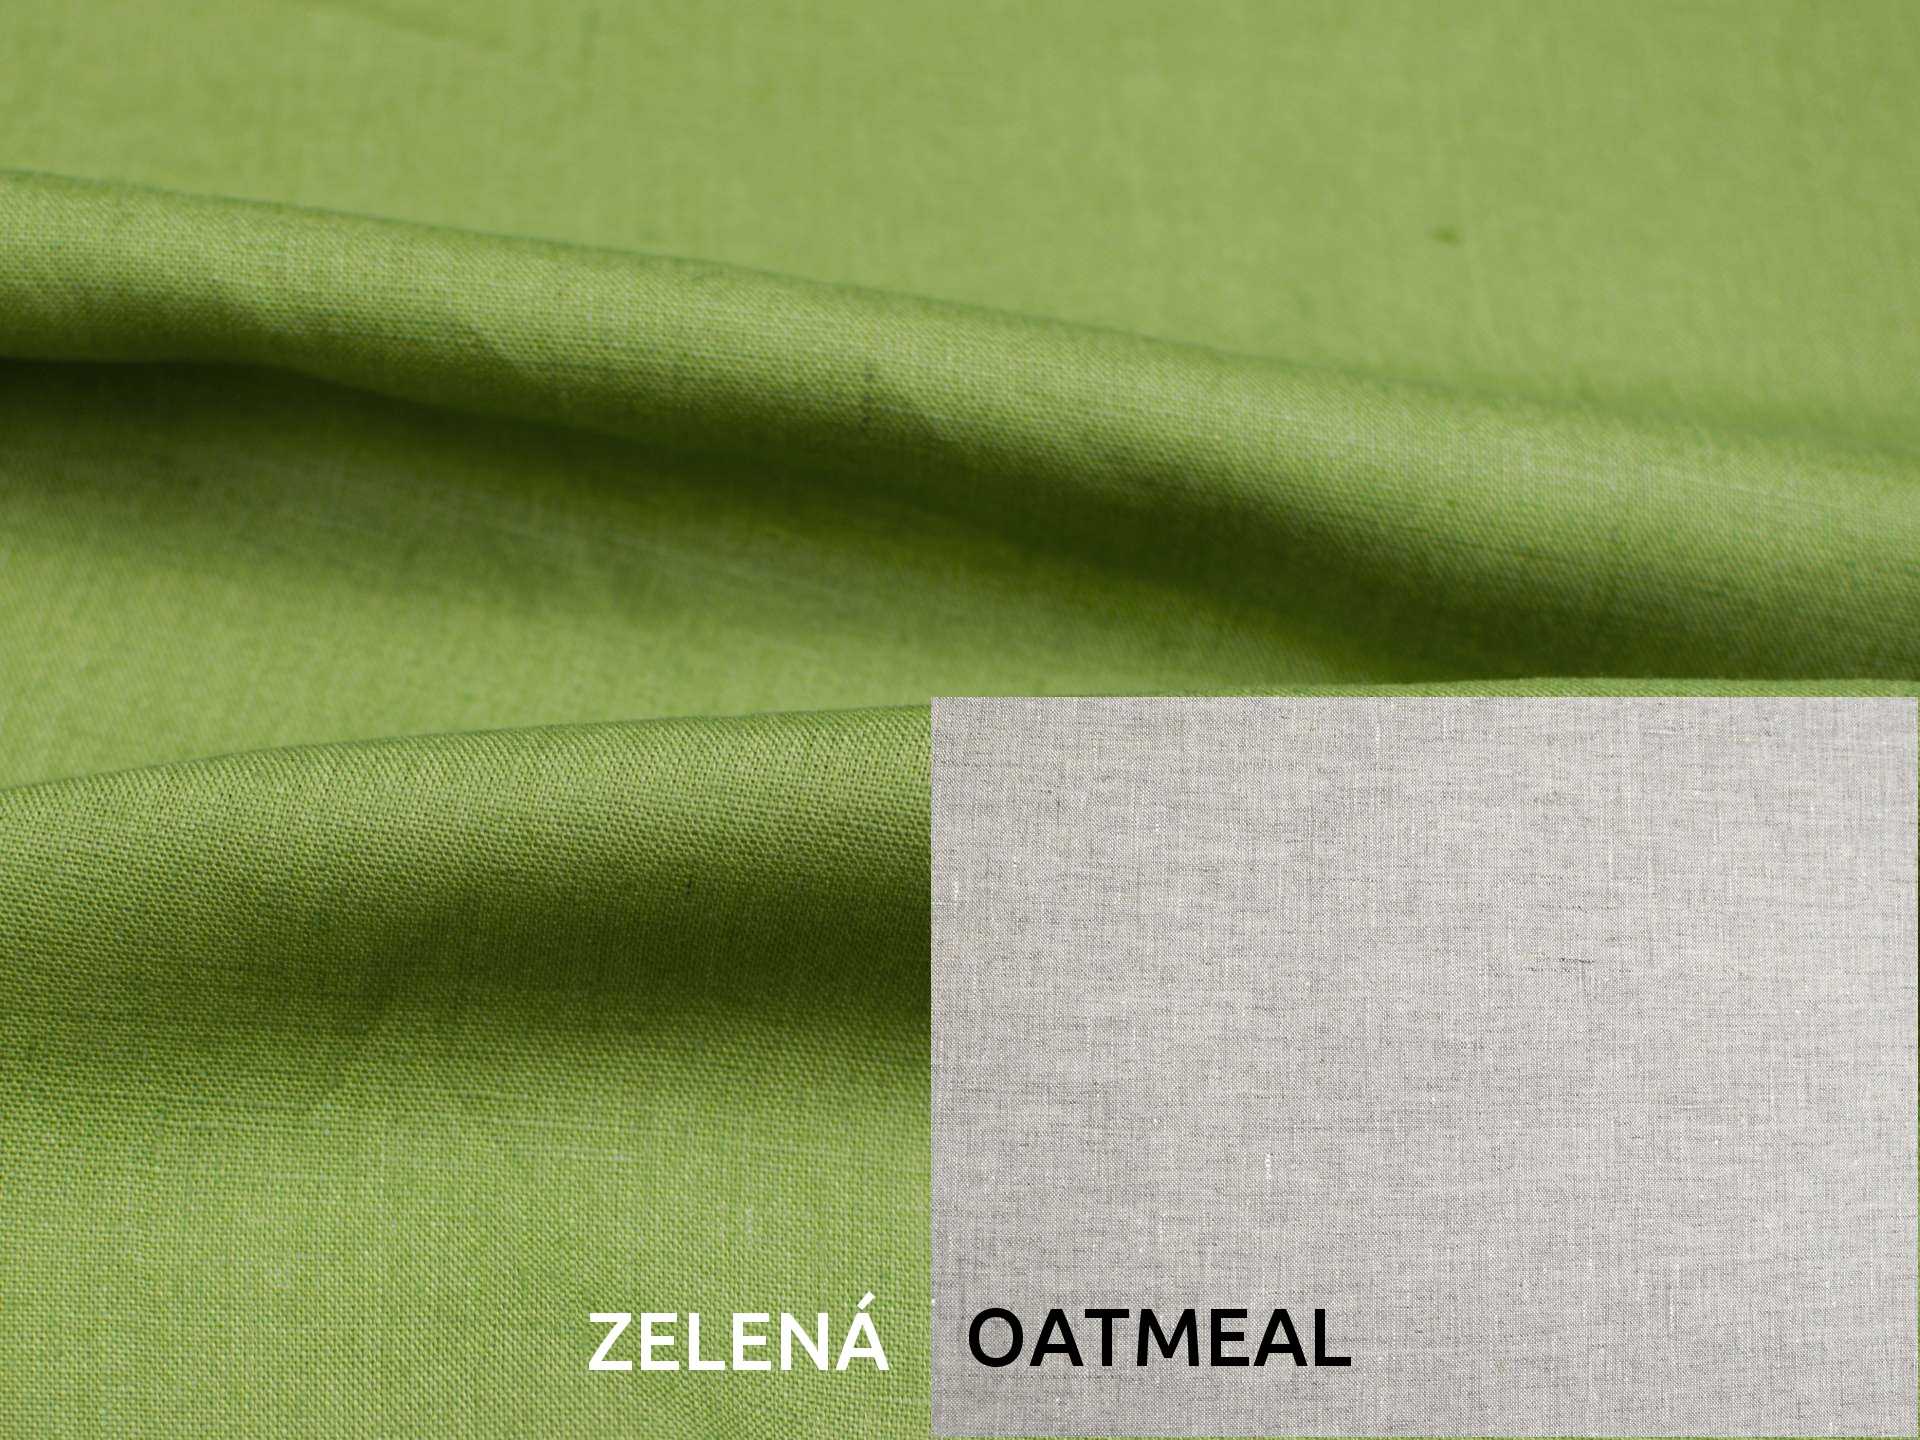 Lněná deka s prošitím zelená, oatmeal